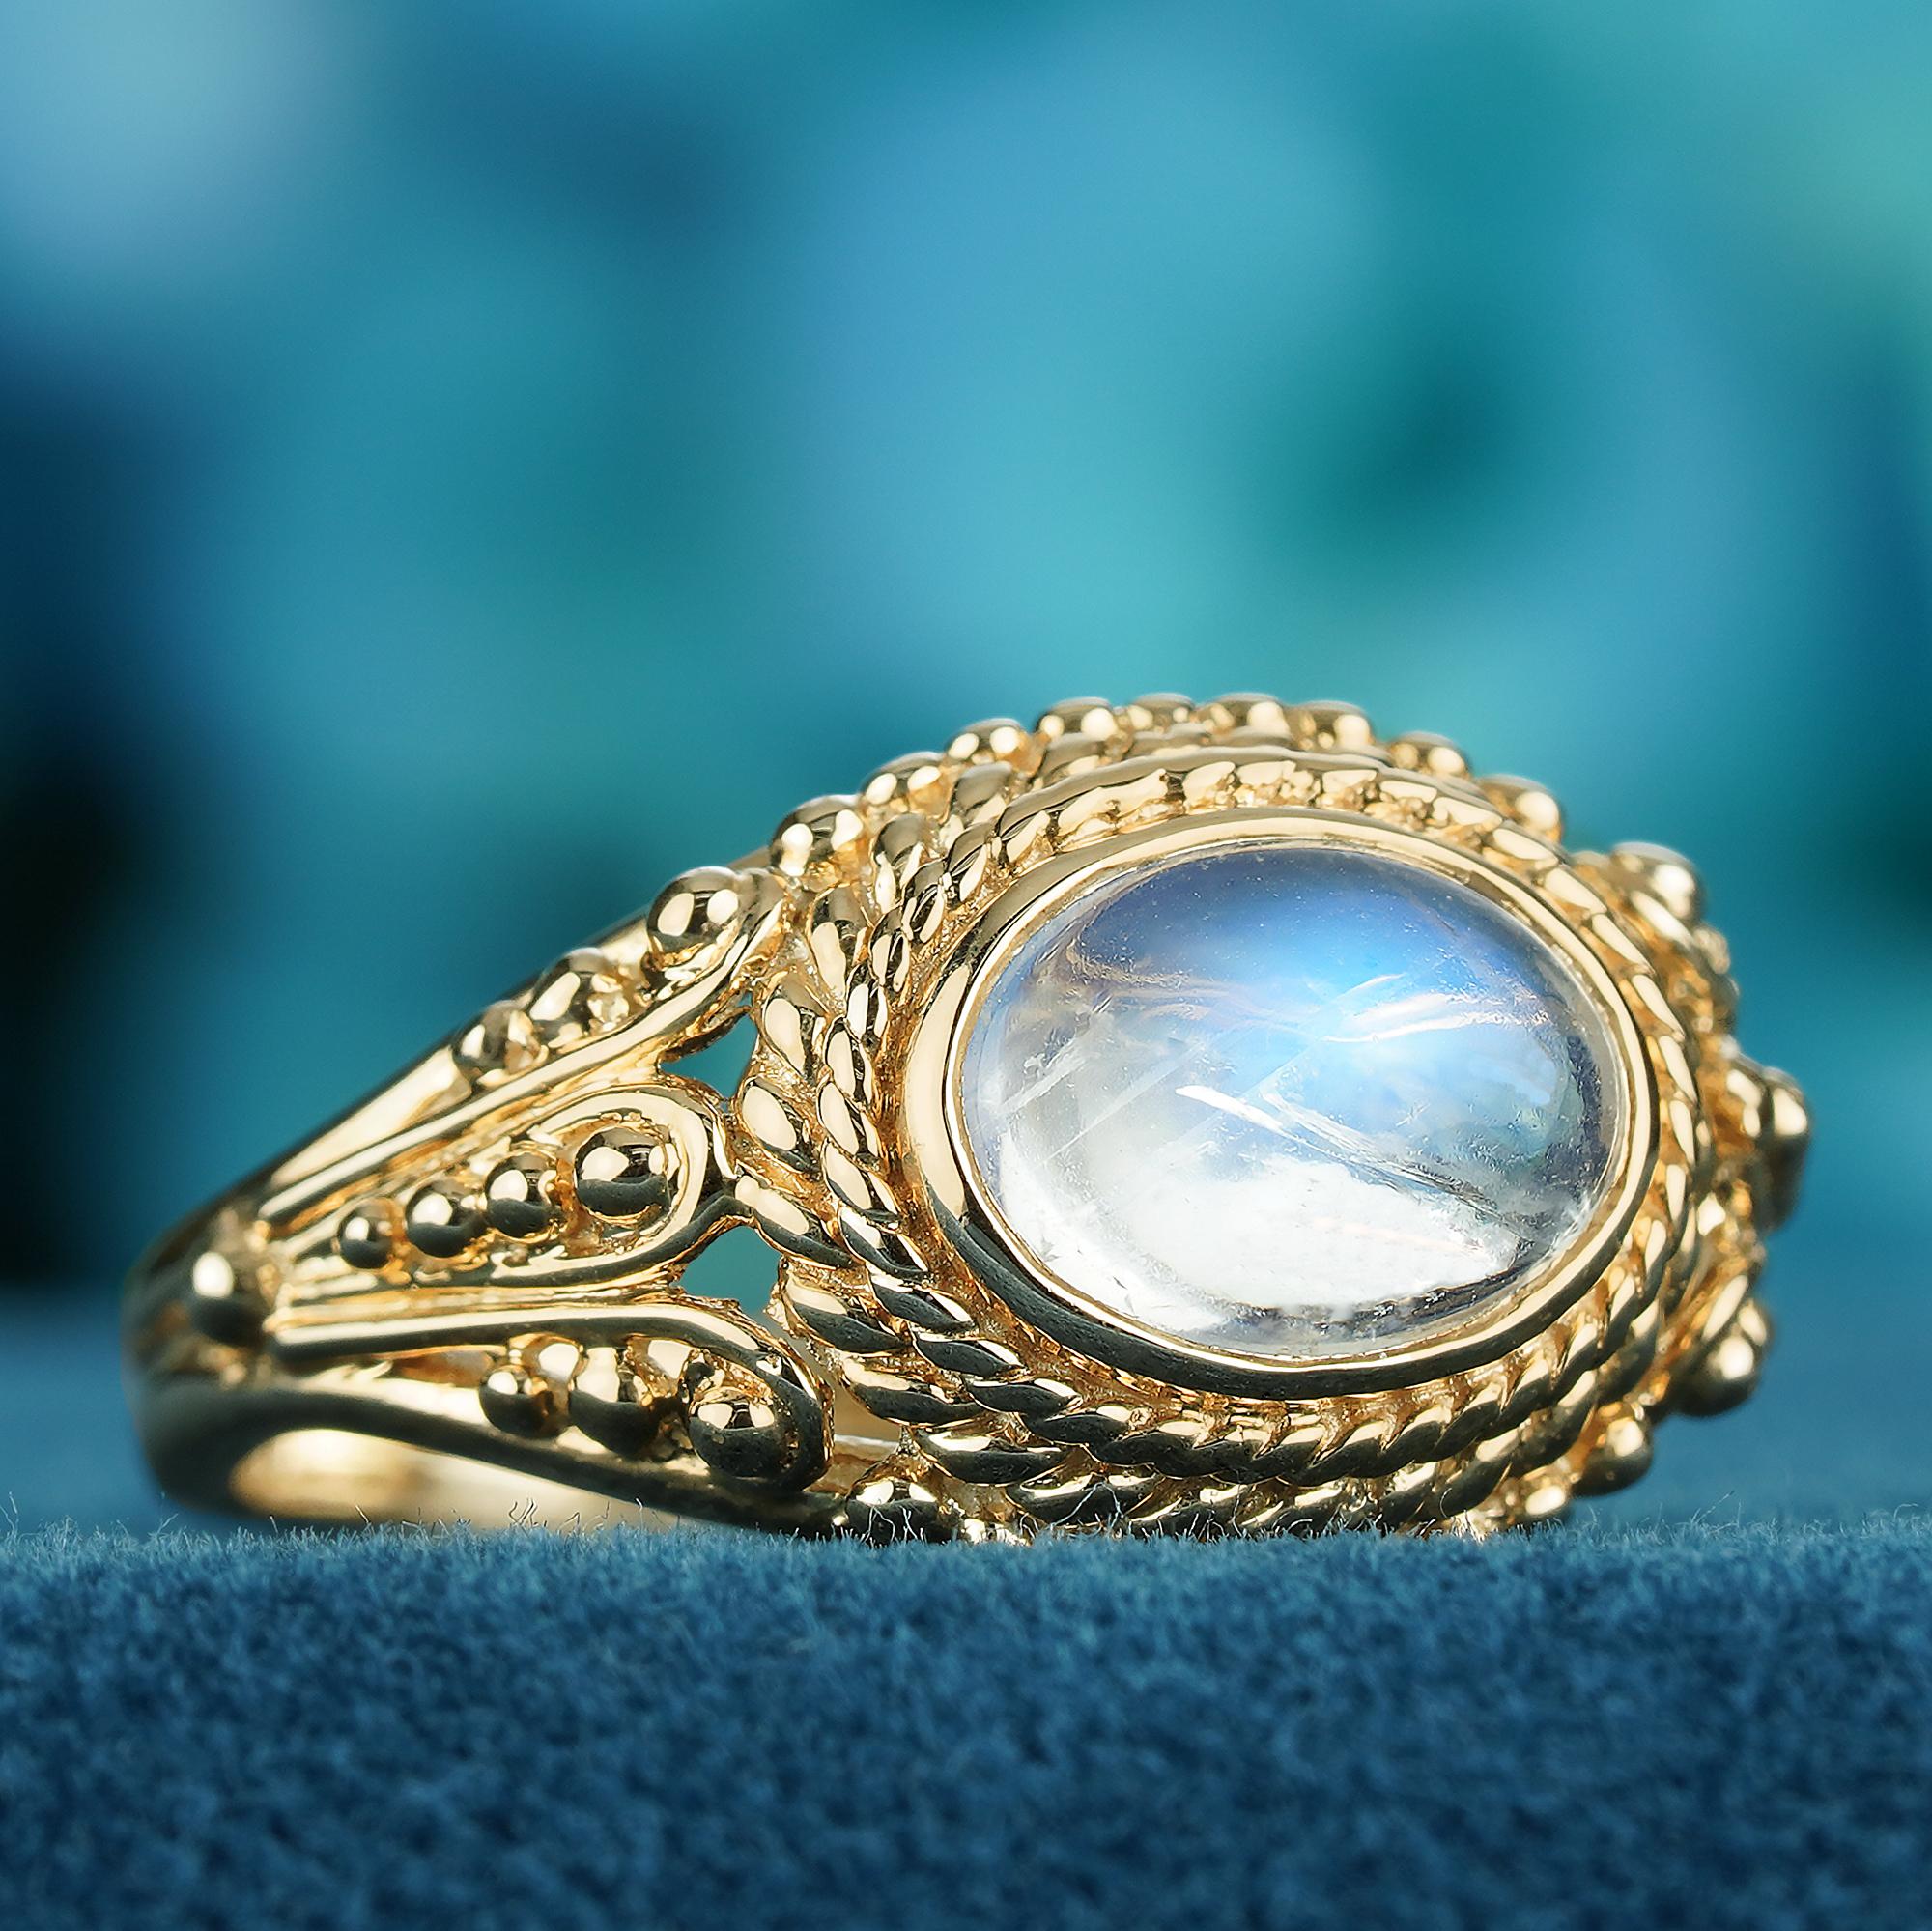 Verleihen Sie Ihrer Hand eine zarte und einzigartige Ästhetik mit diesem filigranen Ring von GEMMA FILIGREE. Unsere filigranen Goldringe im antiken Design stehen für Zartheit und leichte Durchbrochenheit, während sie gleichzeitig ein Leben lang für